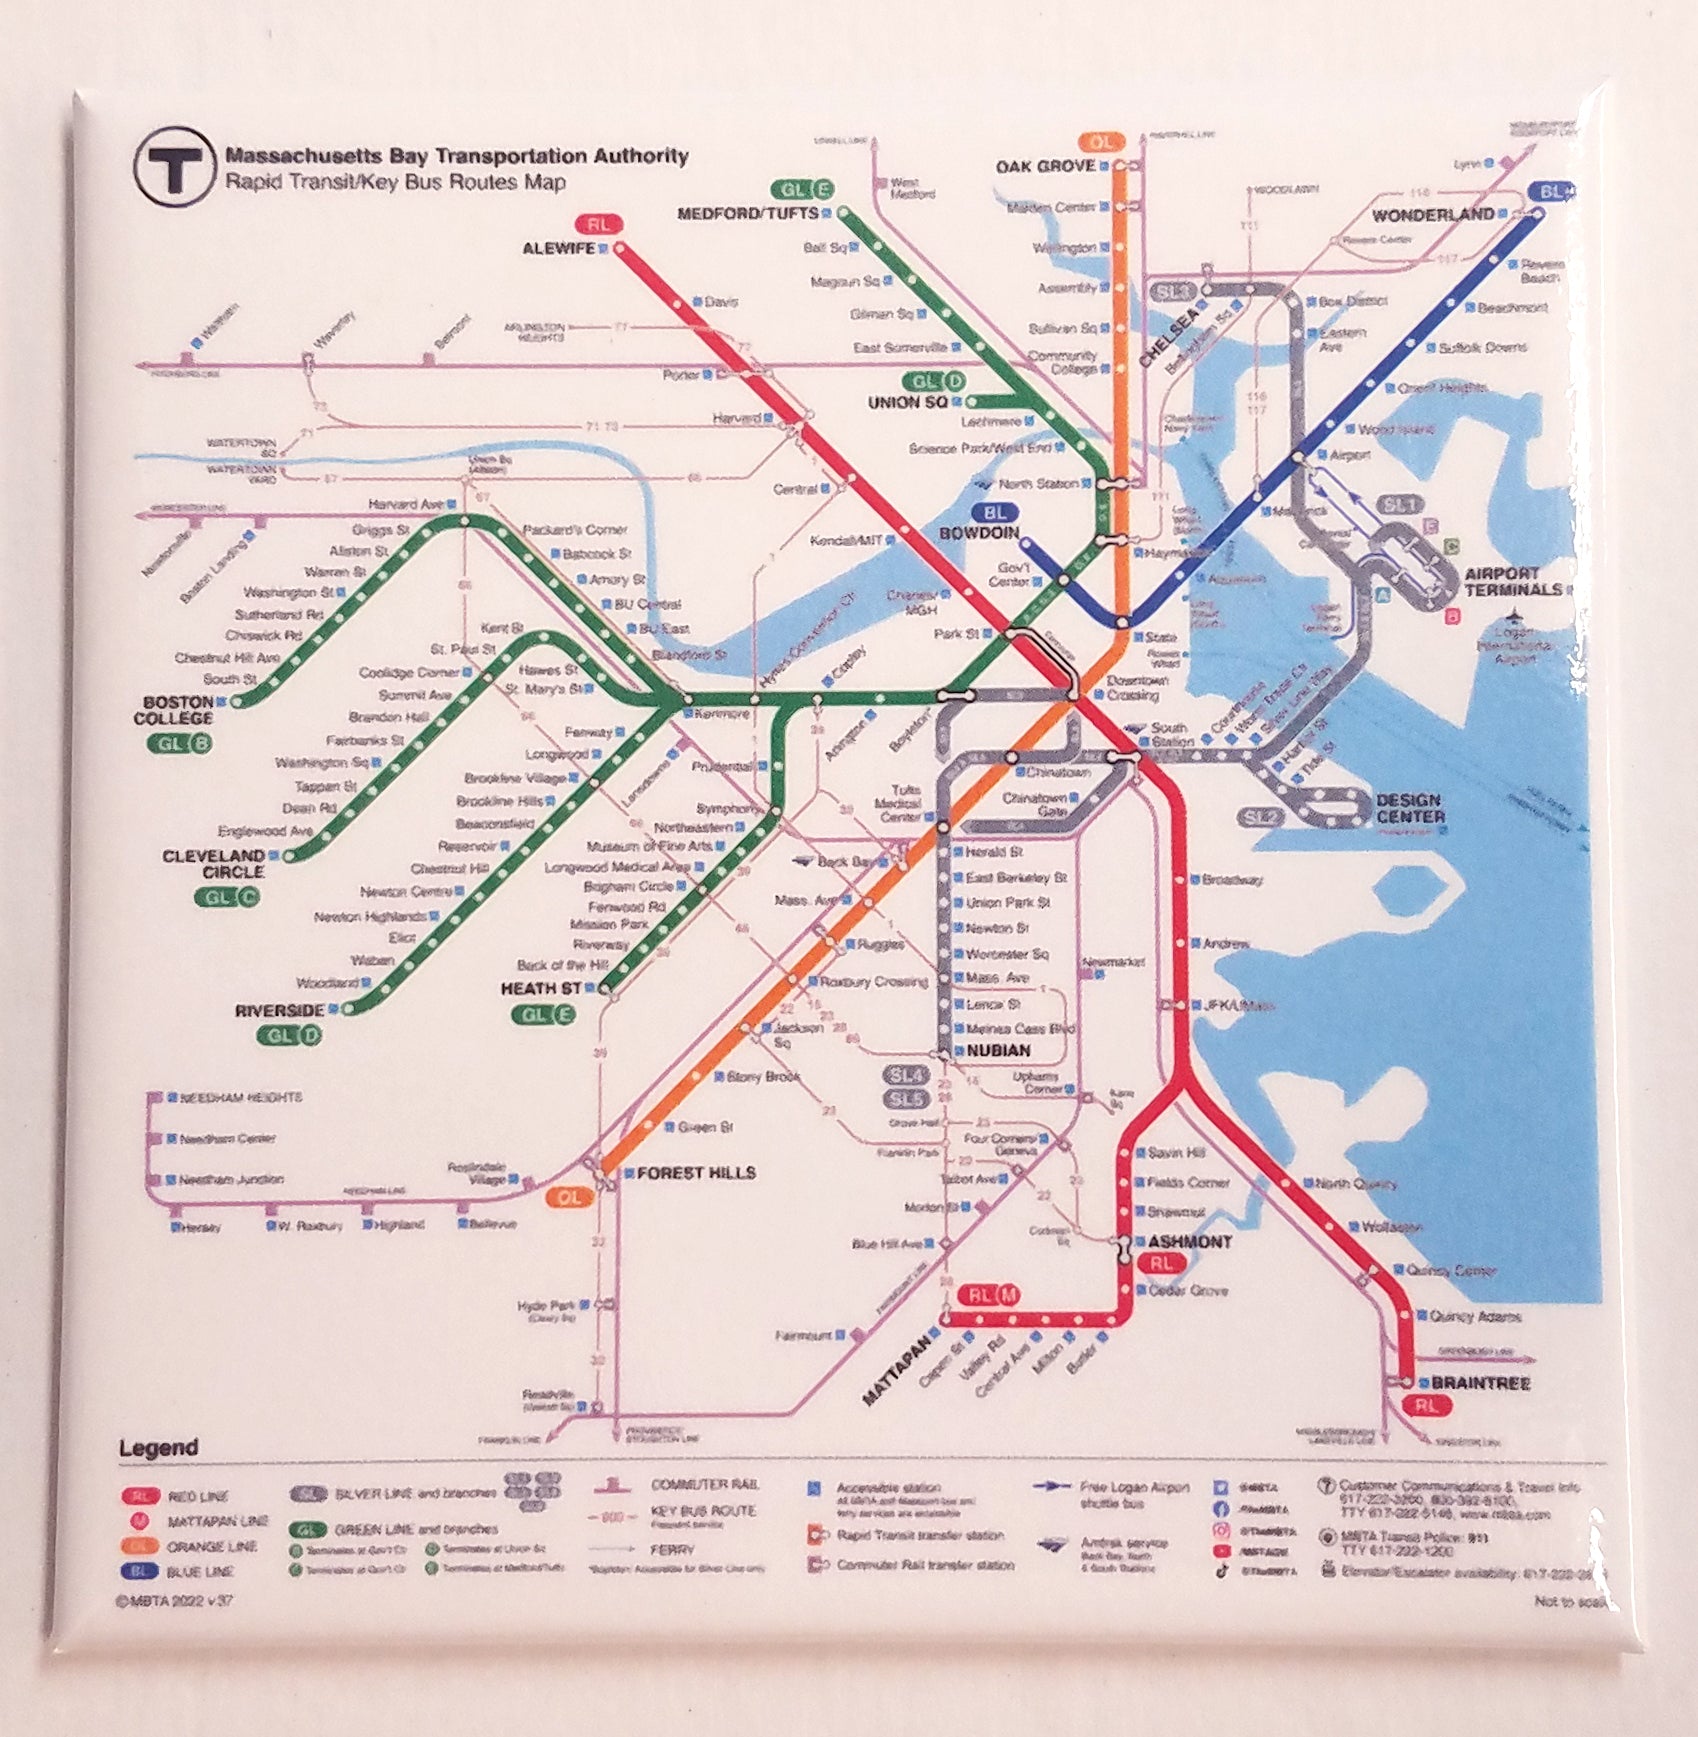 MBTA 2022 Rapid Transit & Key Bus Routes System Map